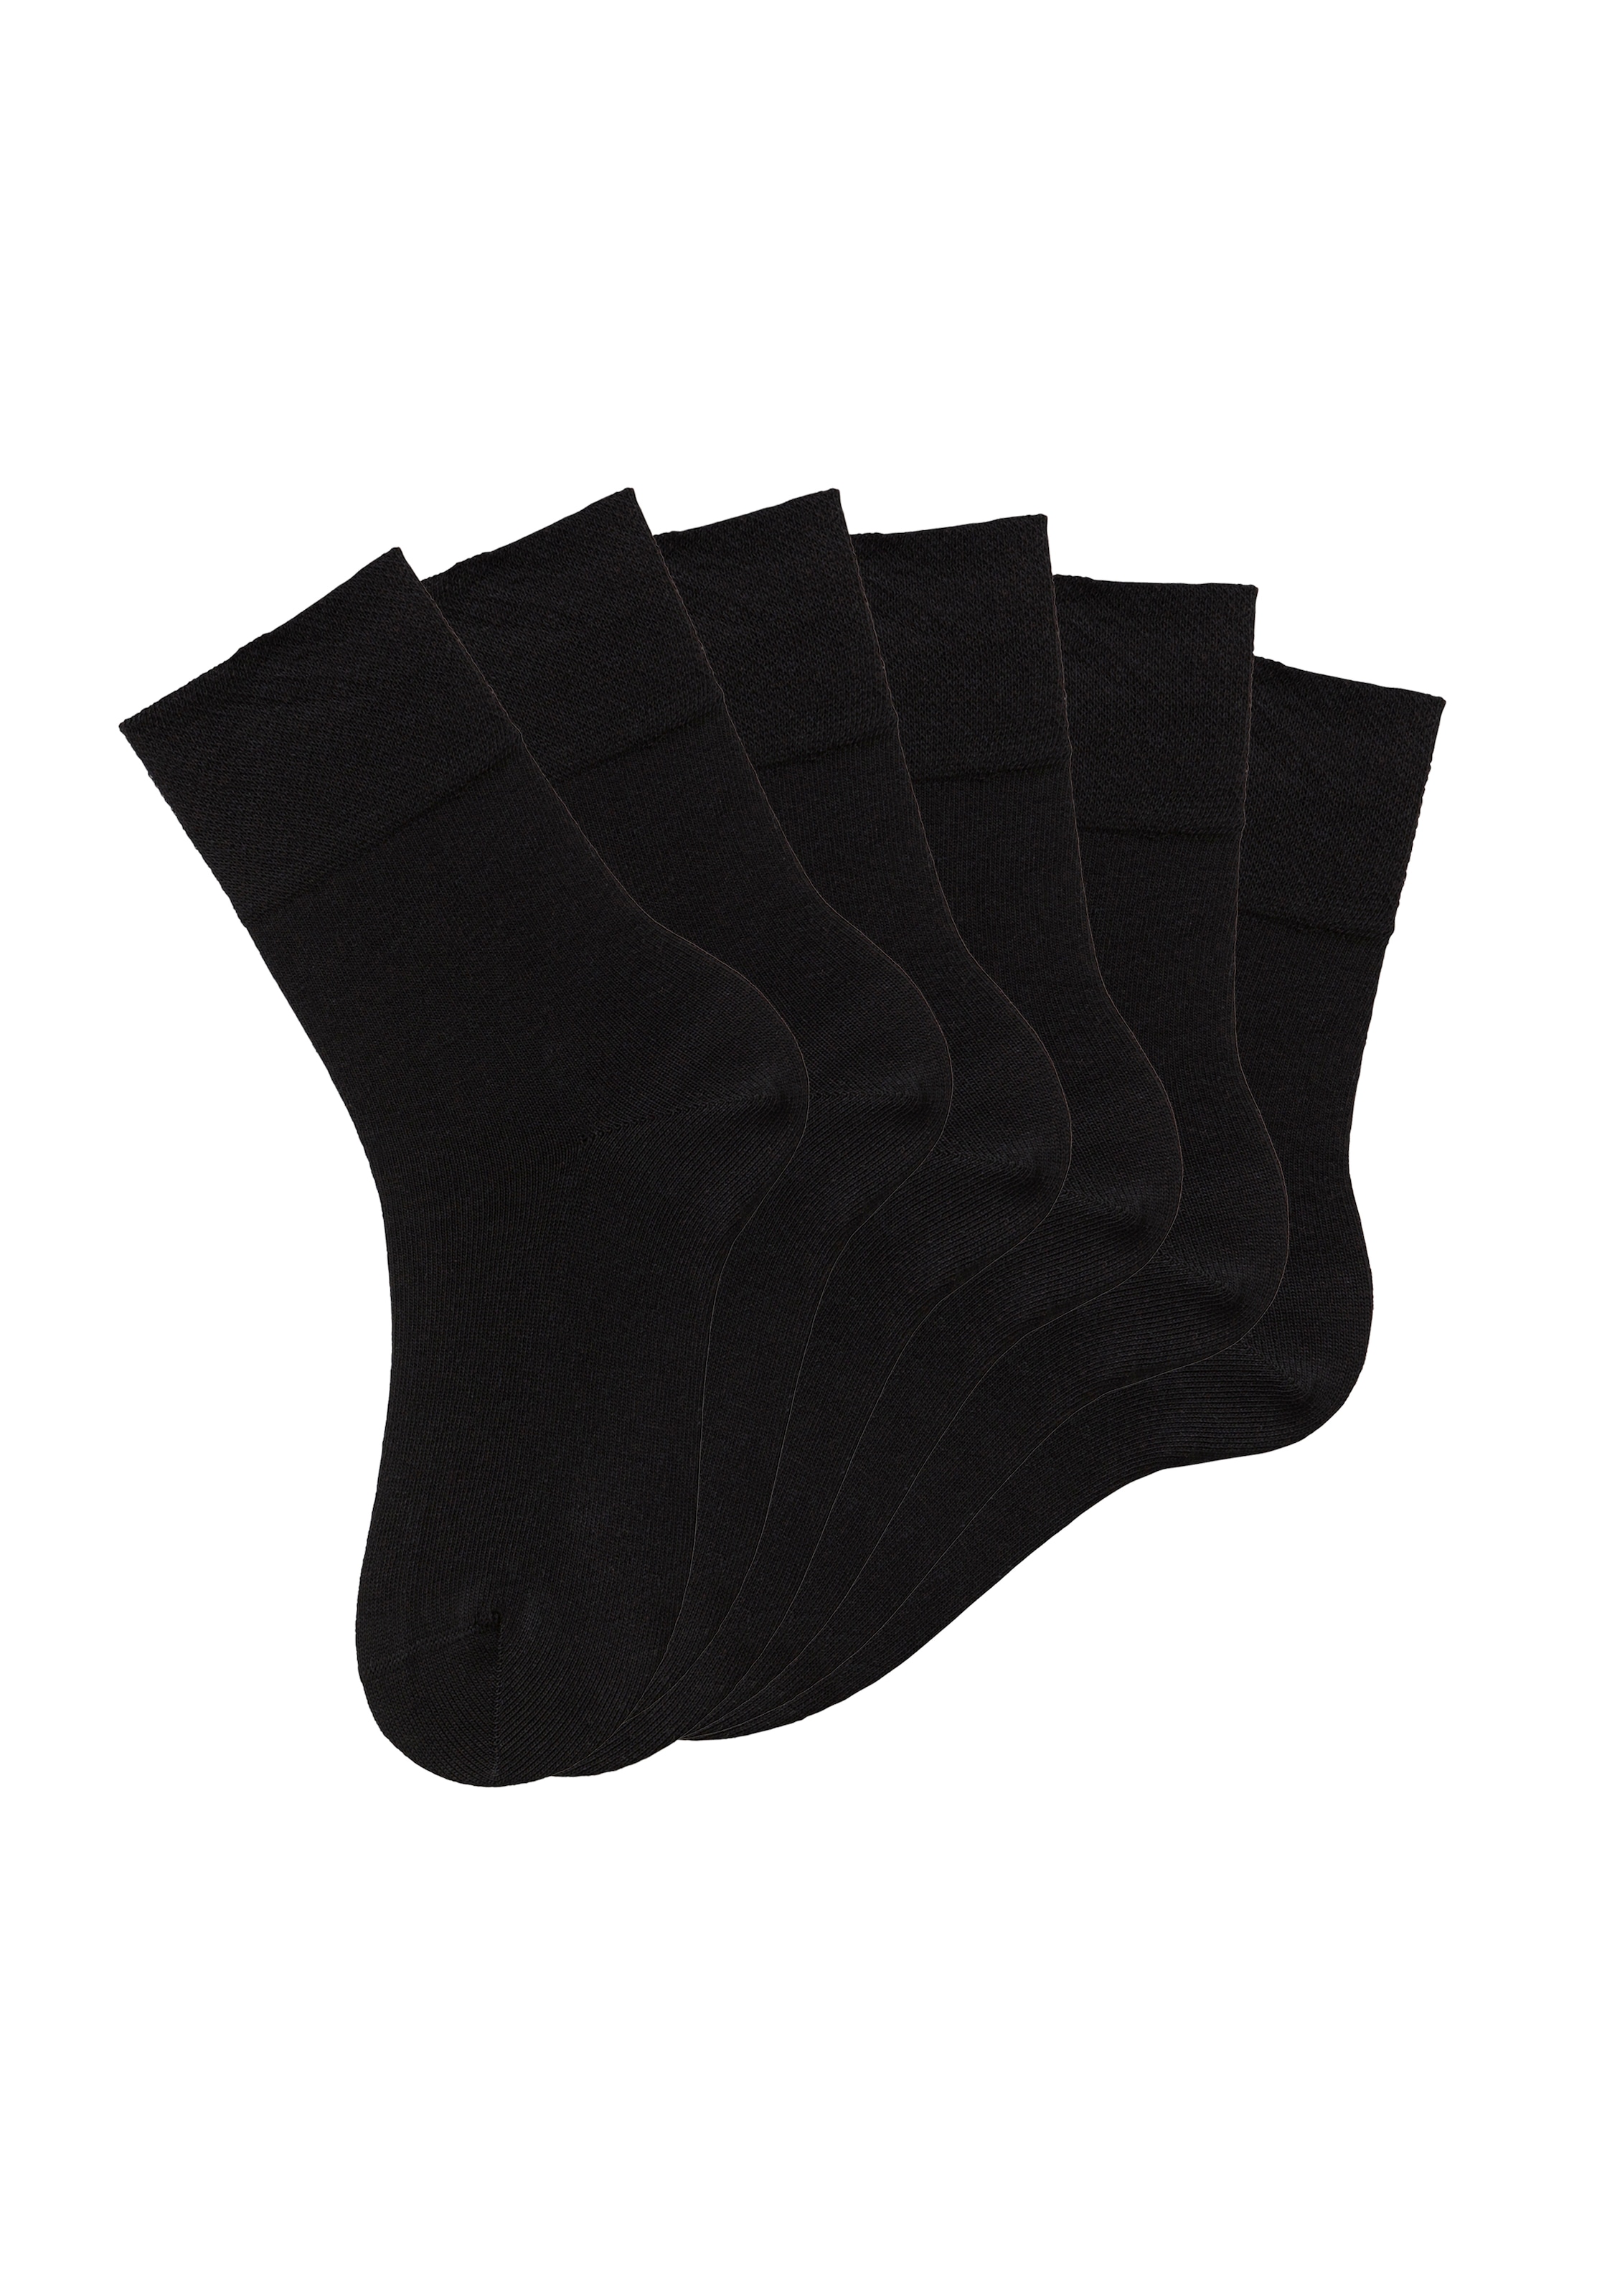 H.I.S Socken, (Set, 6 Paar), mit Komfortbund auch für Diabetiker geeignet  kaufen | BAUR